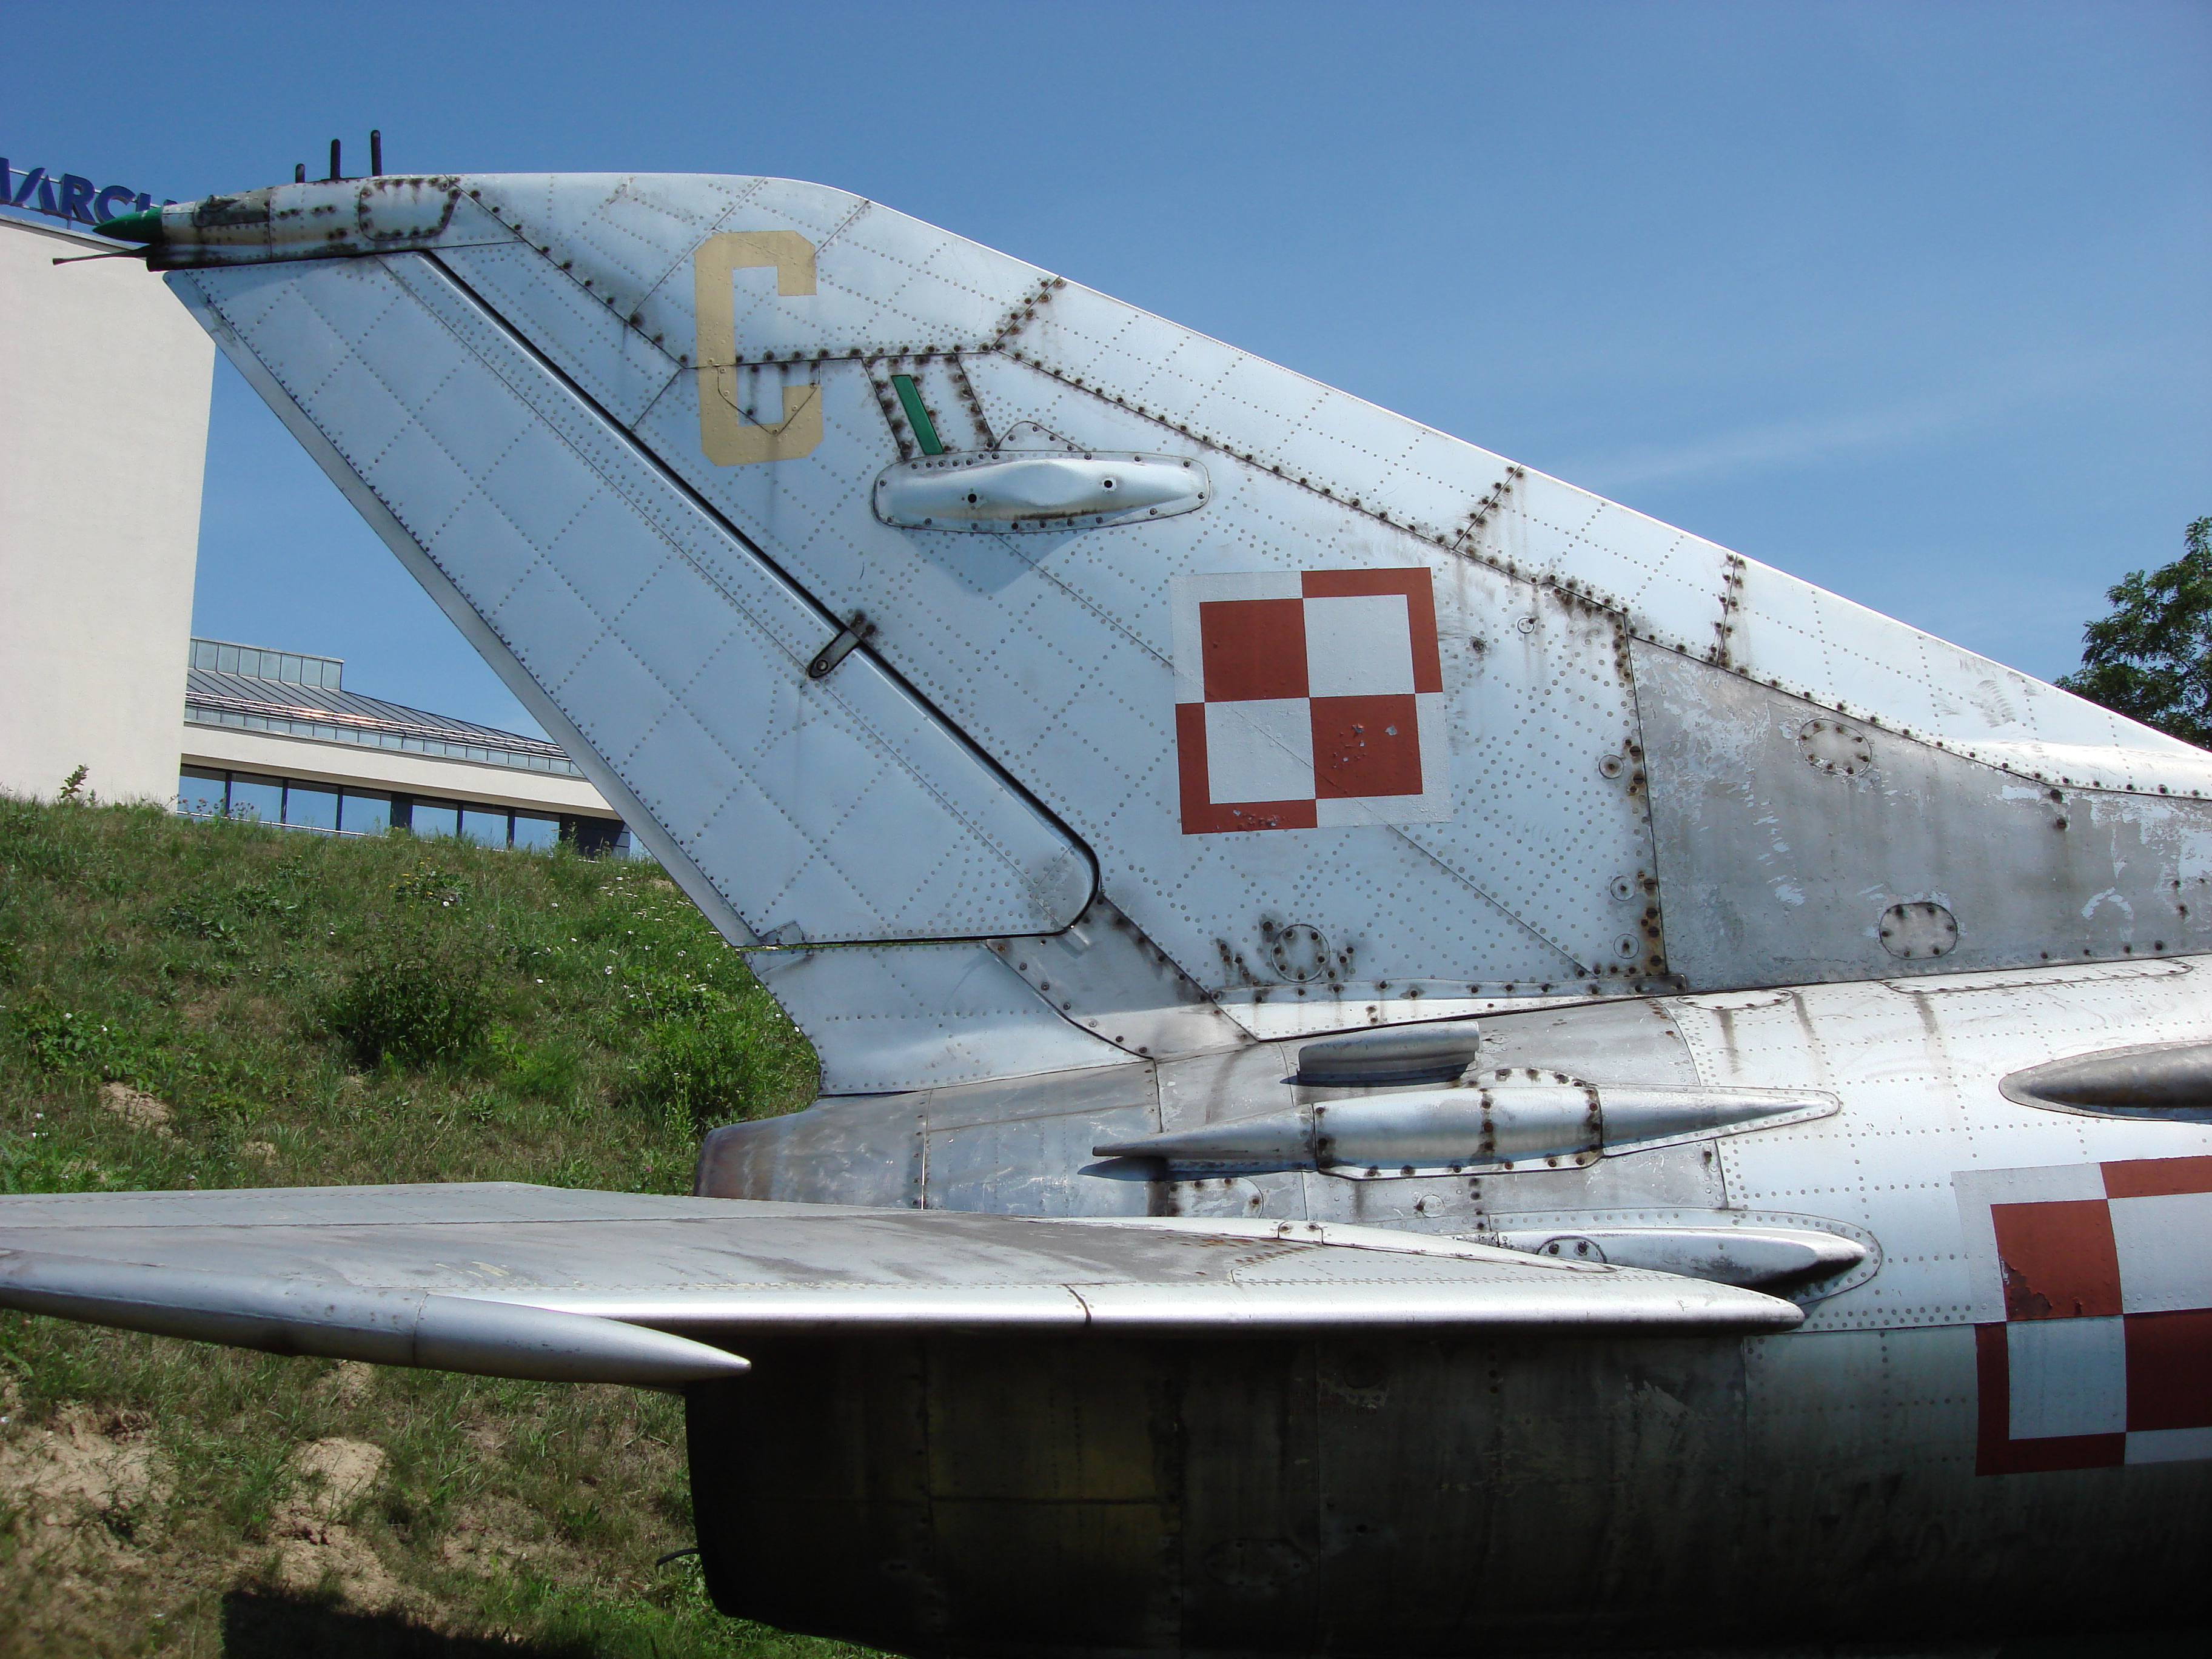 Usterzenie MiG-21 F-13 nb 809. Czyżyny 2007 rok. Zdjęcie Karol Placha Hetman